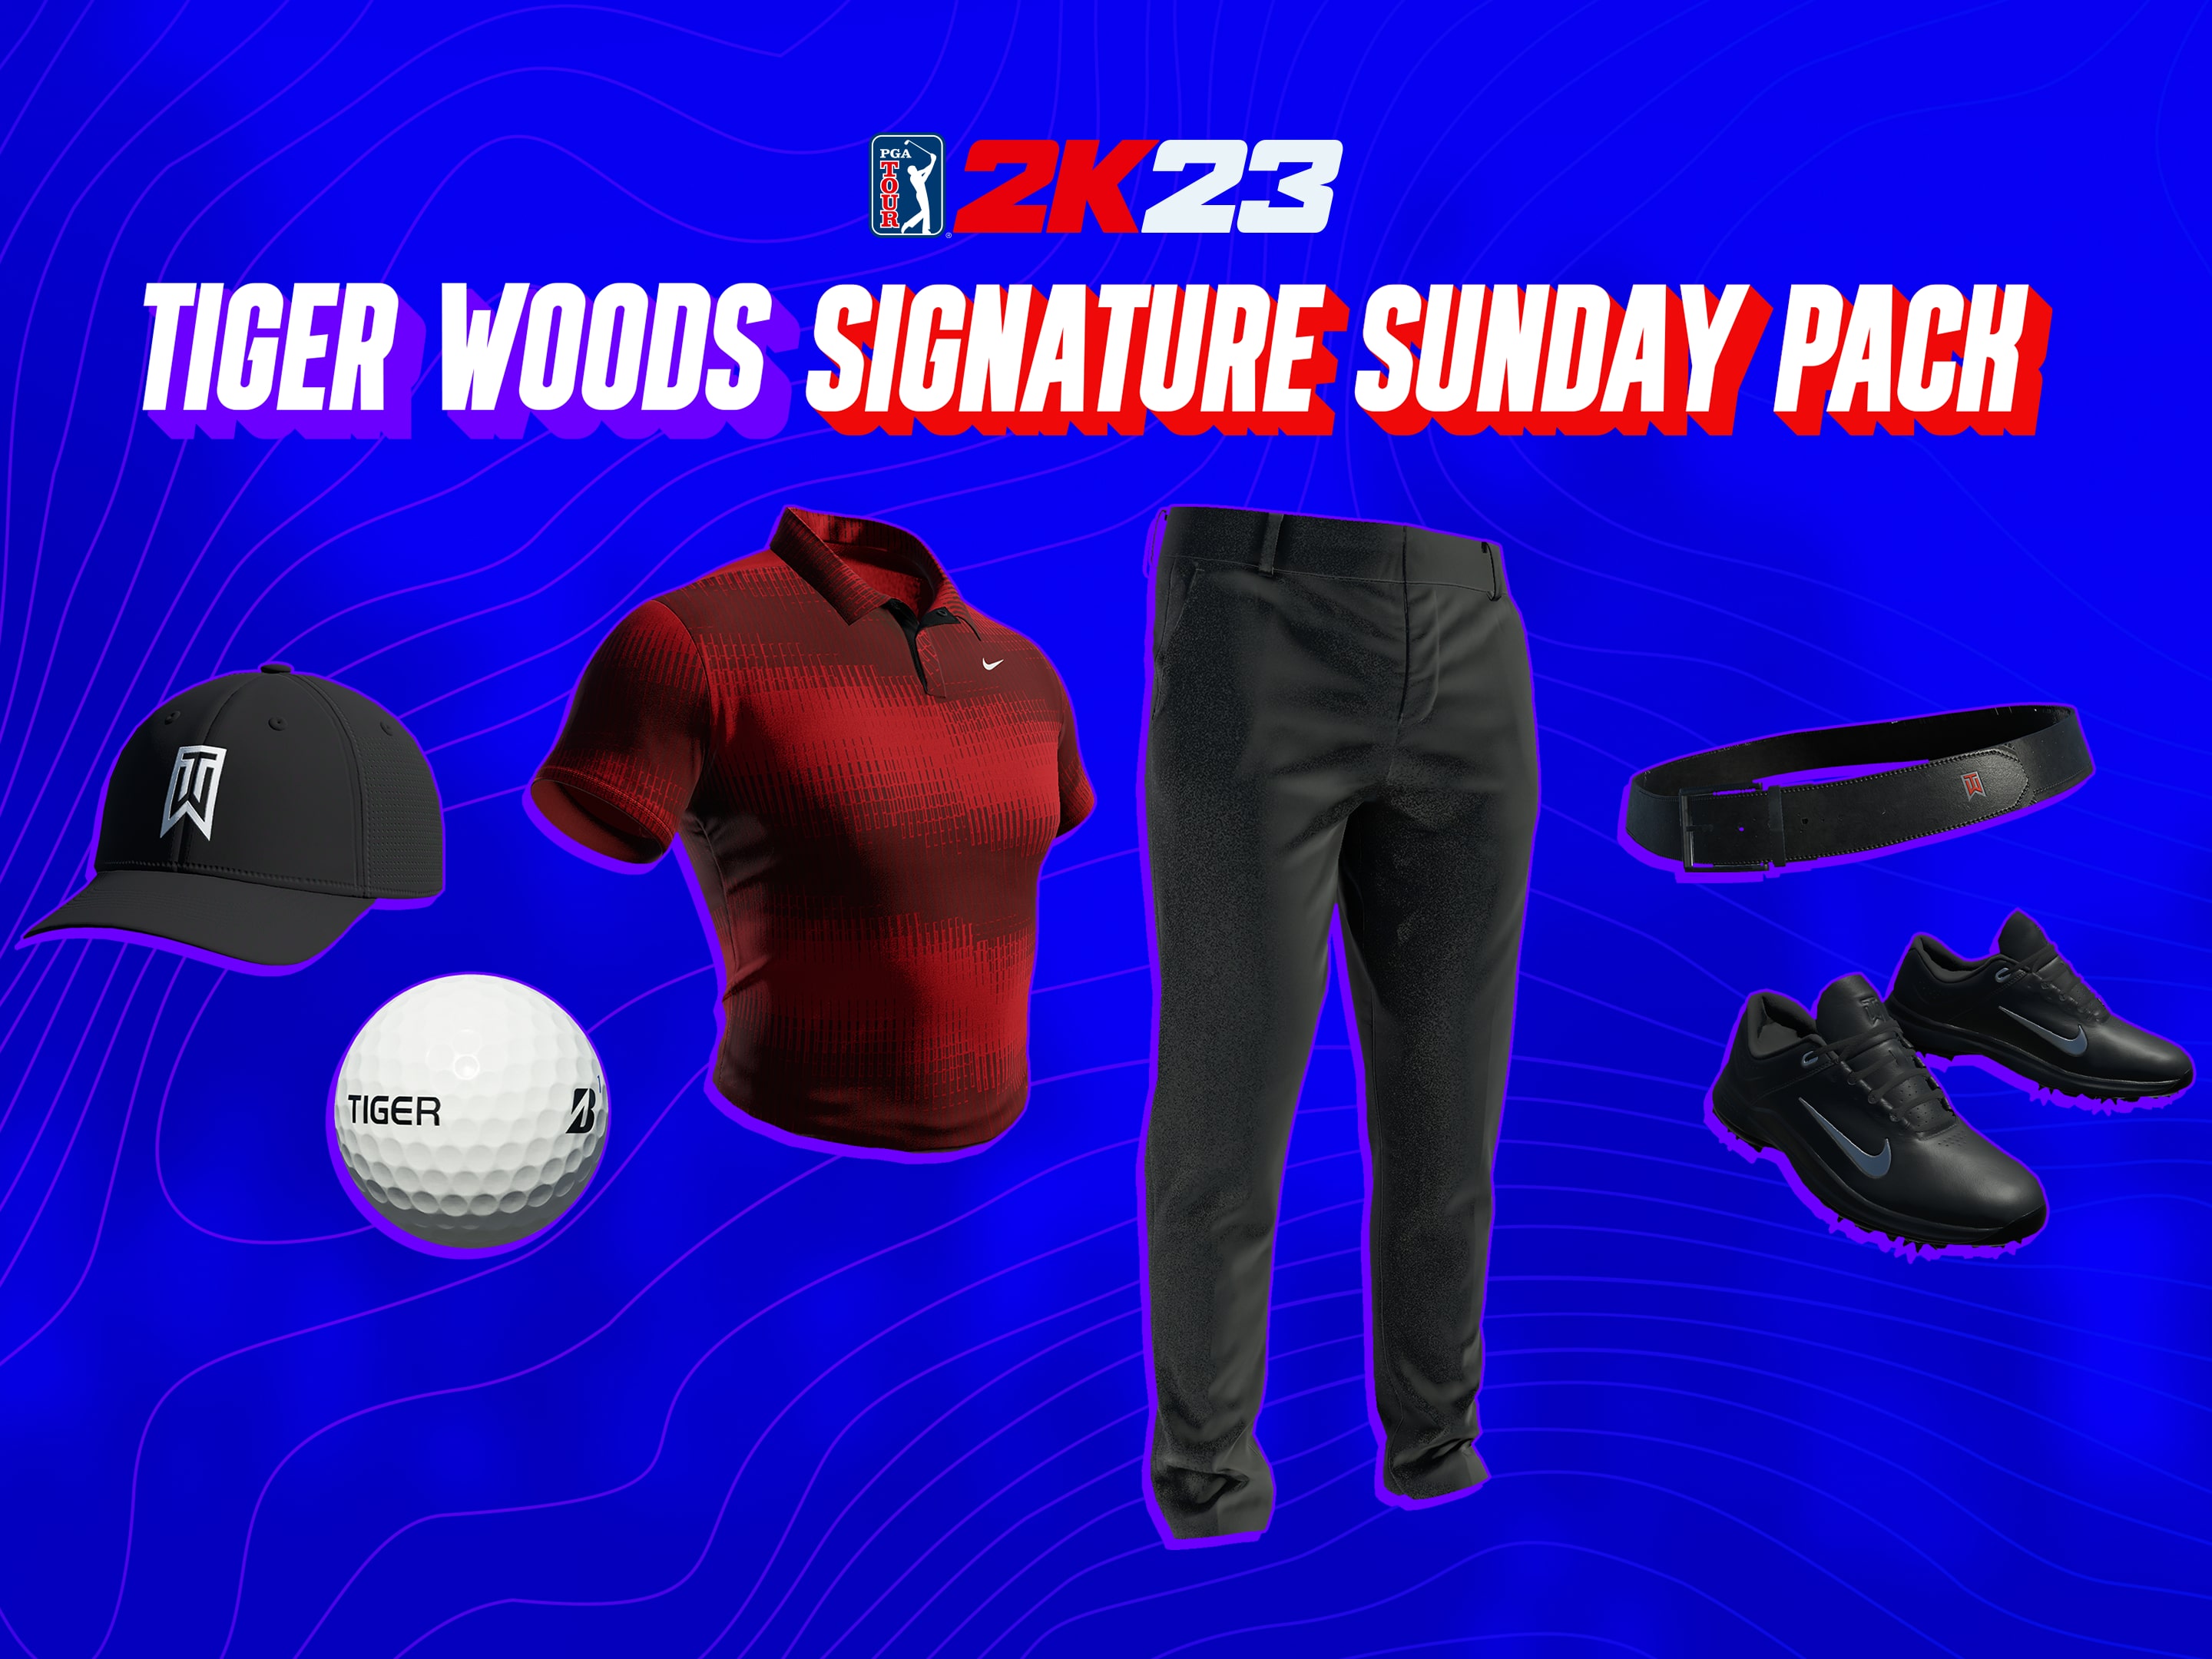 Pack Tiger 2K23 PGA Signature Sunday Woods TOUR